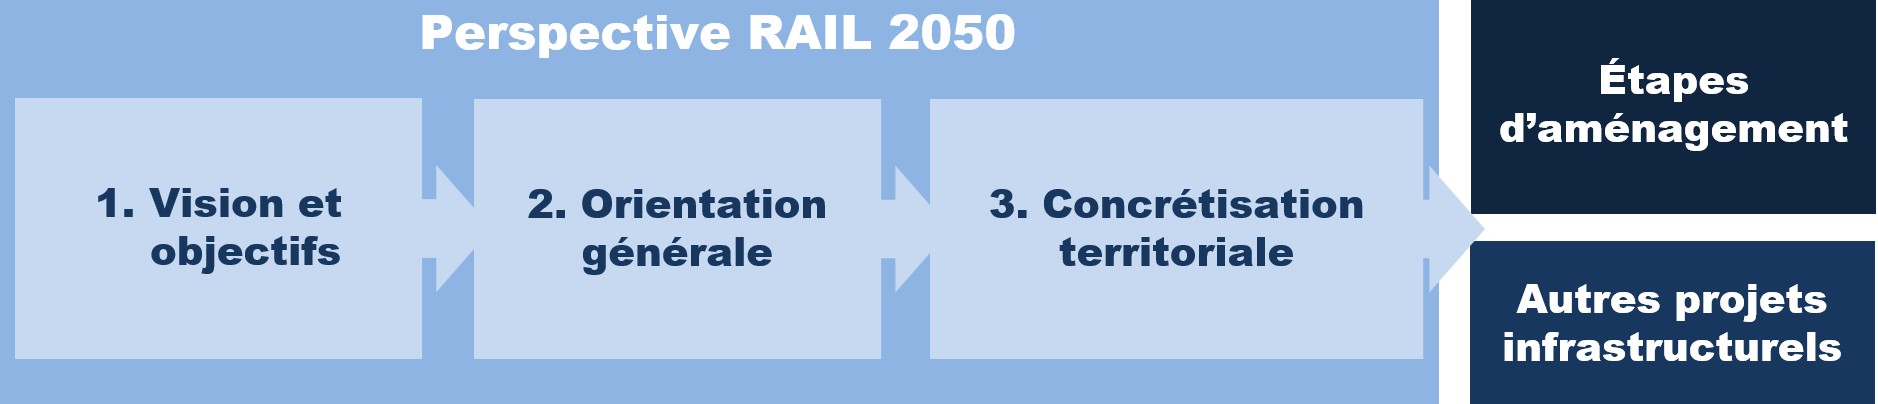 Bahn 2050 Stossrichtung f